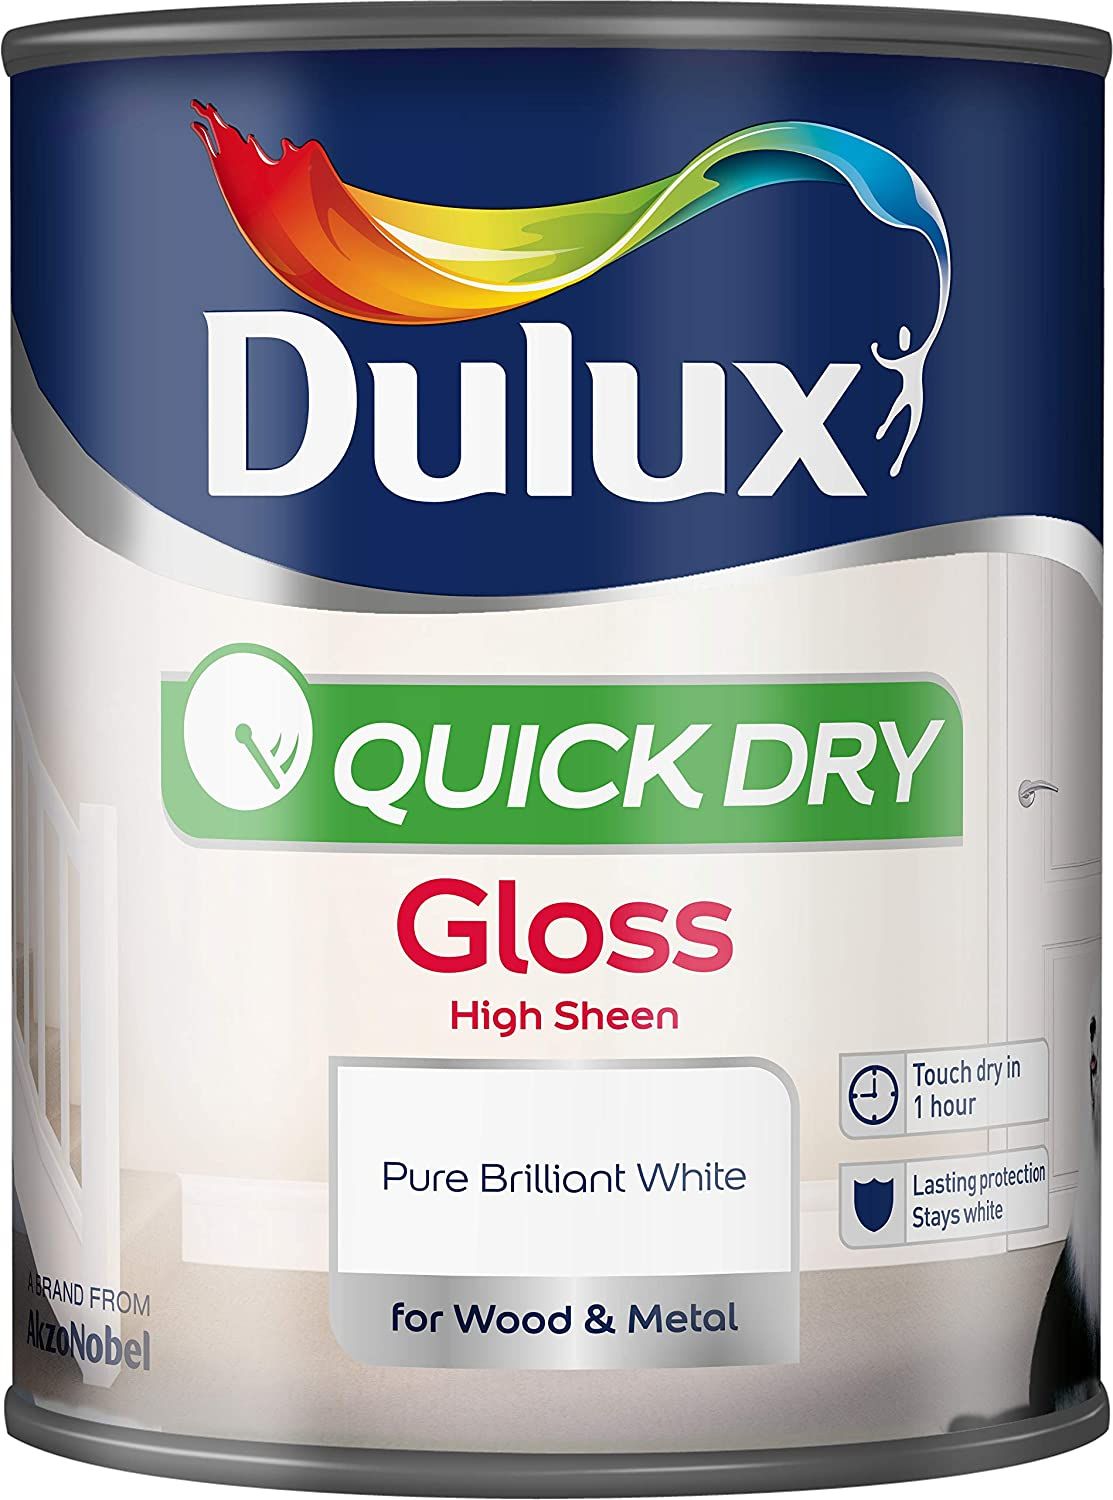 Imatge Dulux Quick Dry